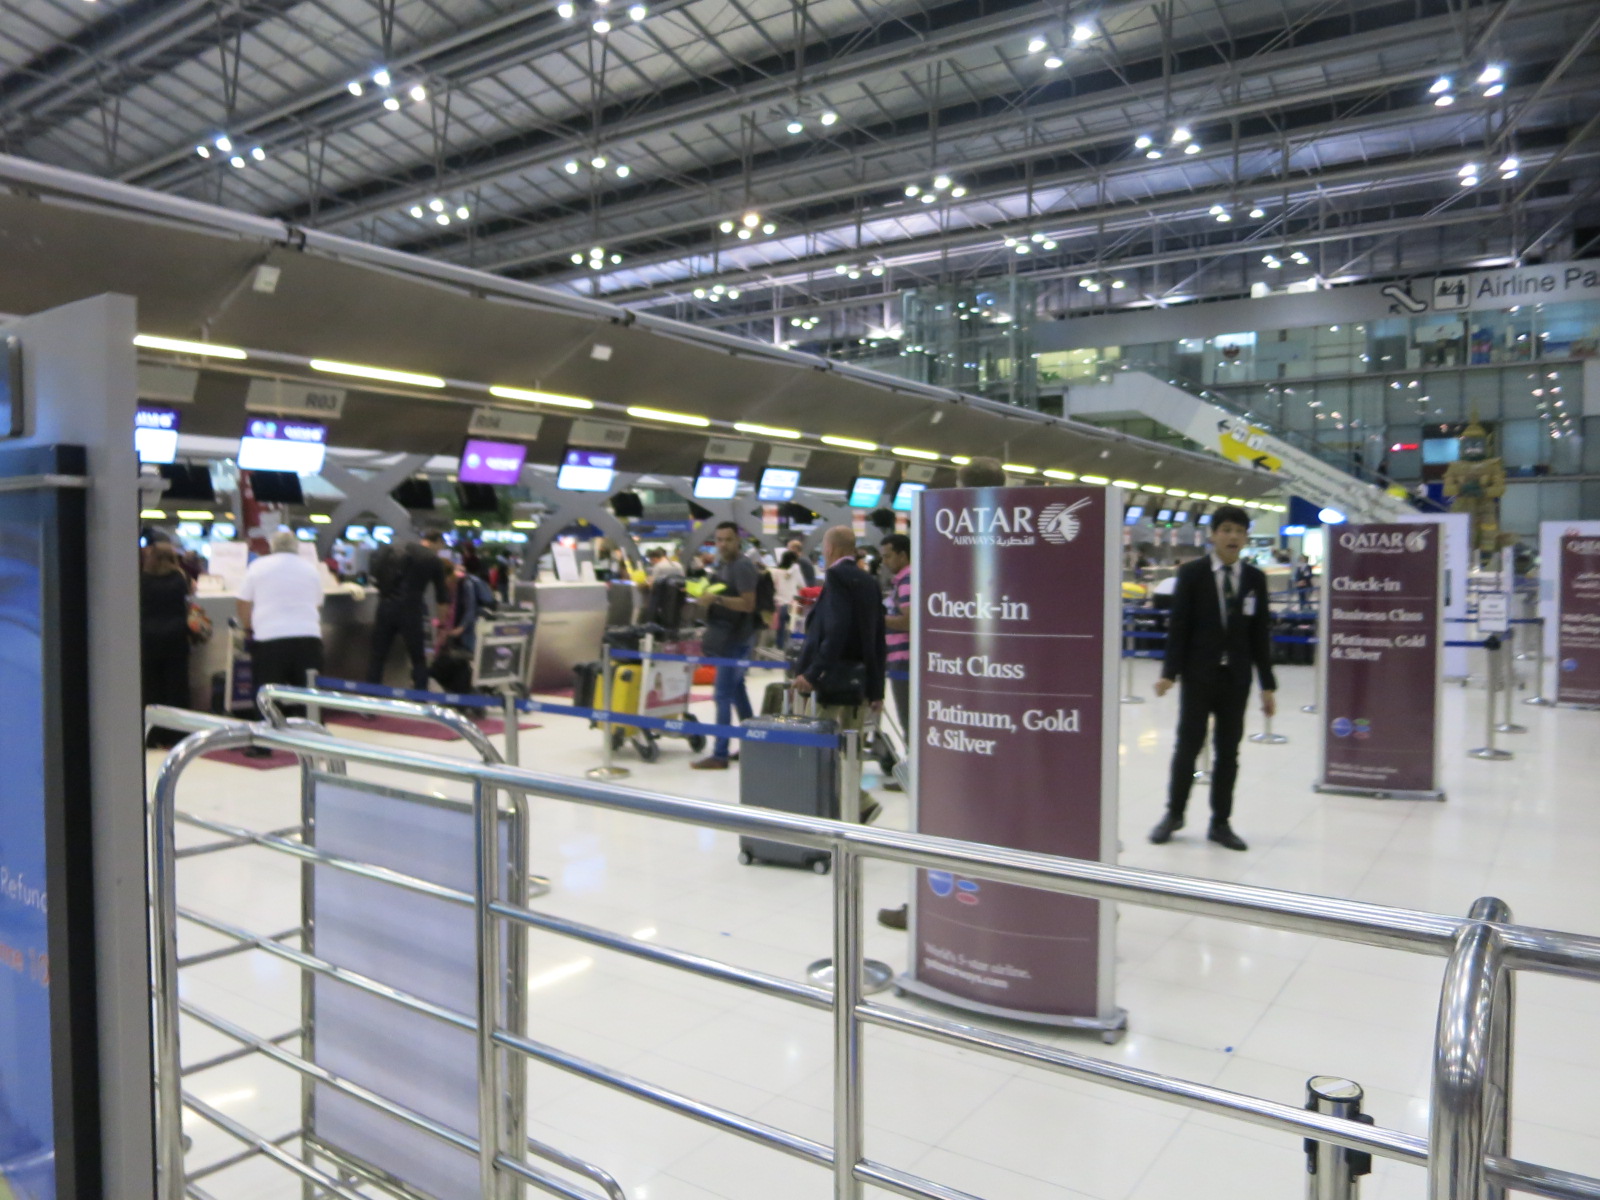 Qatar Airways first class check in Bangkok